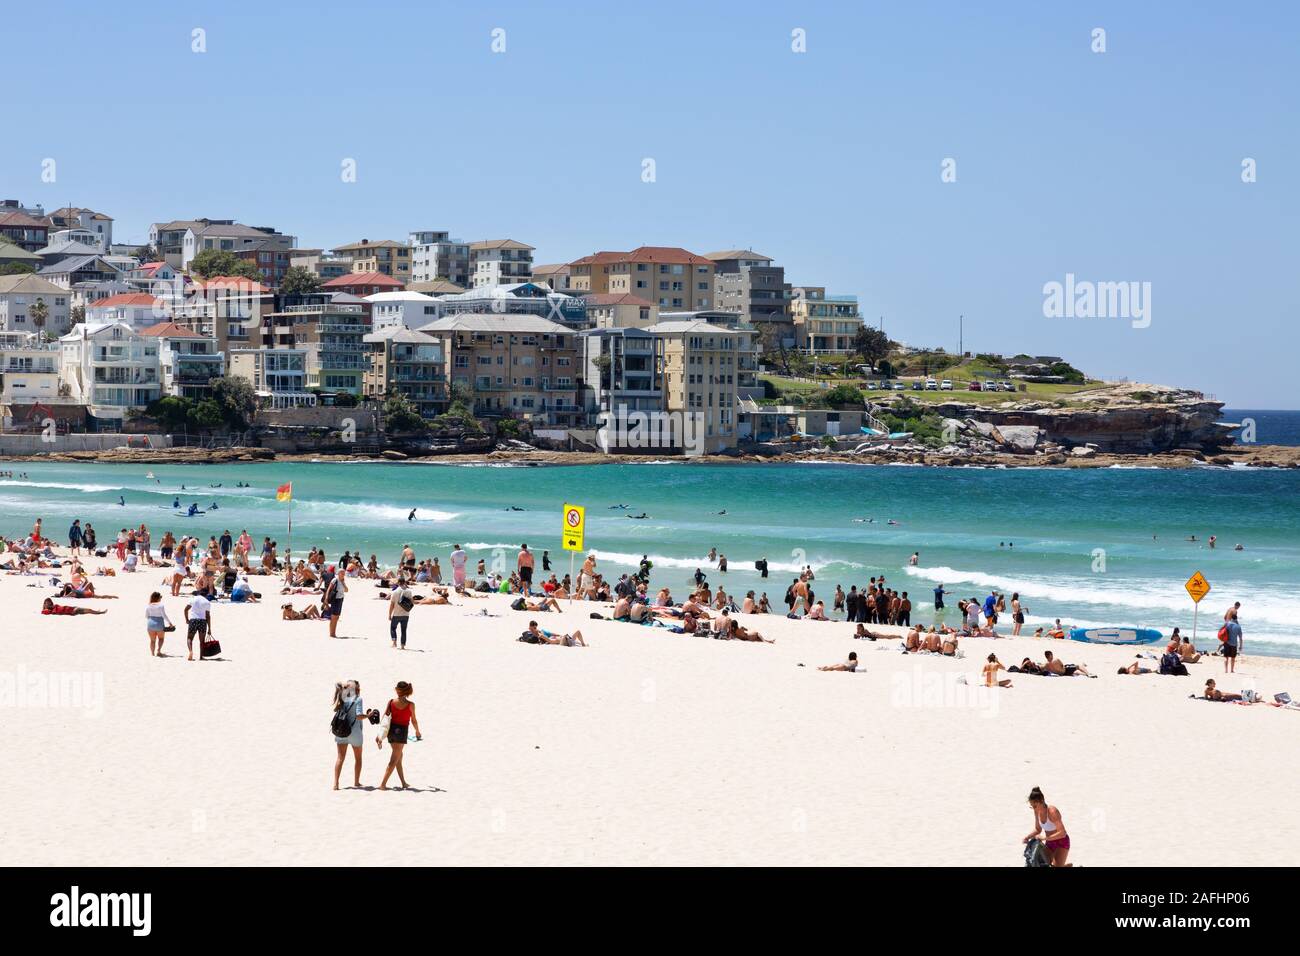 Les gens qui profitent du soleil en été sur Bondi Beach, Sydney Nouvelle-Galles du Sud, Australie Banque D'Images